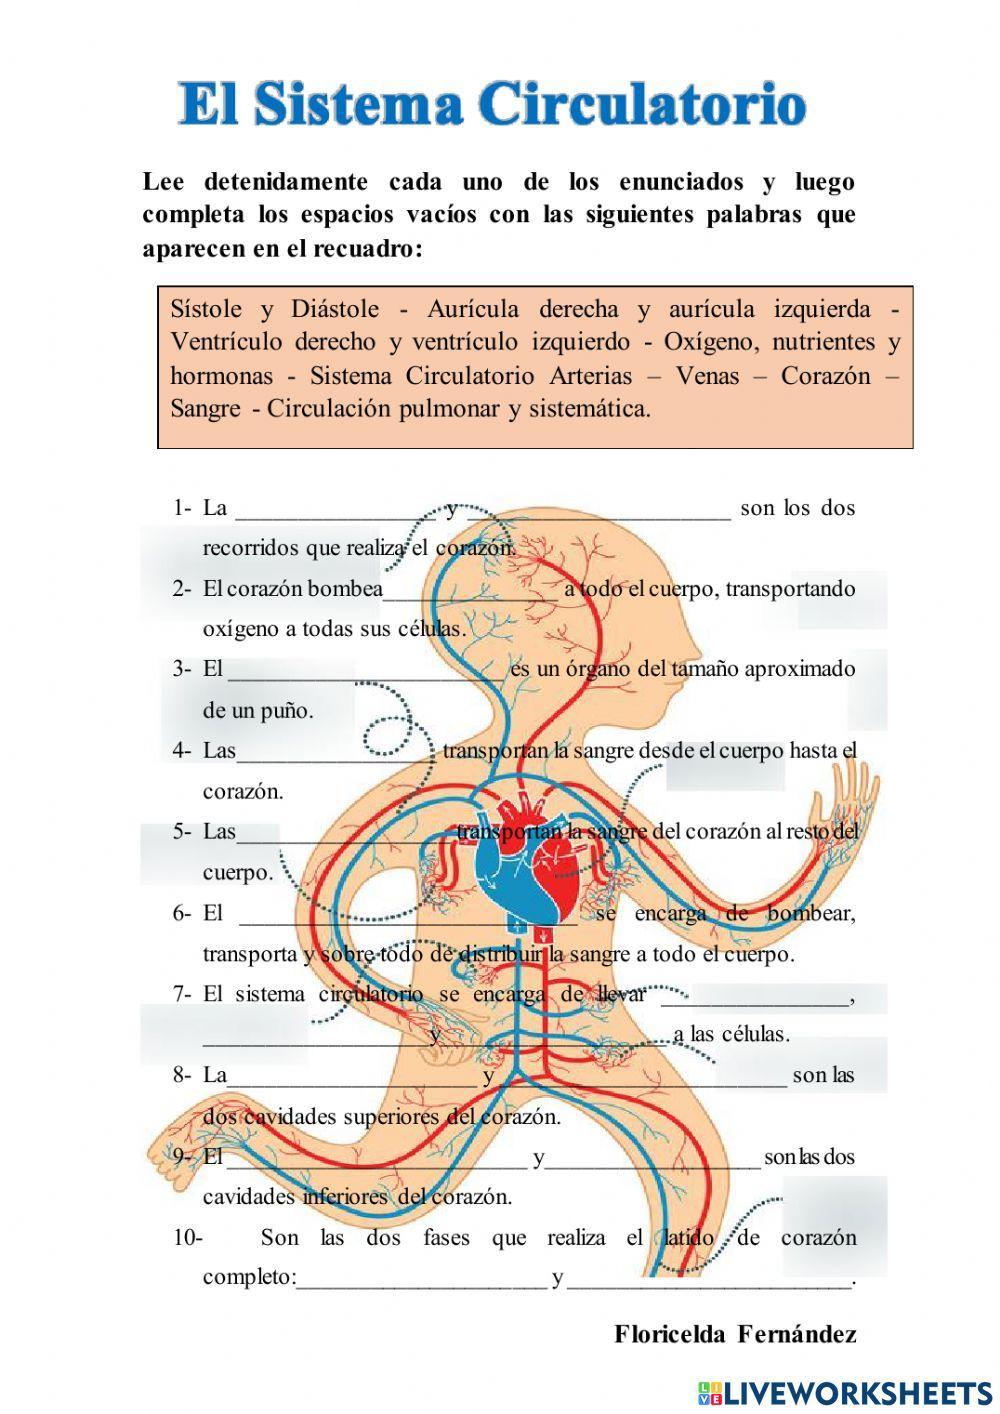 El Sistema Circulatorio.